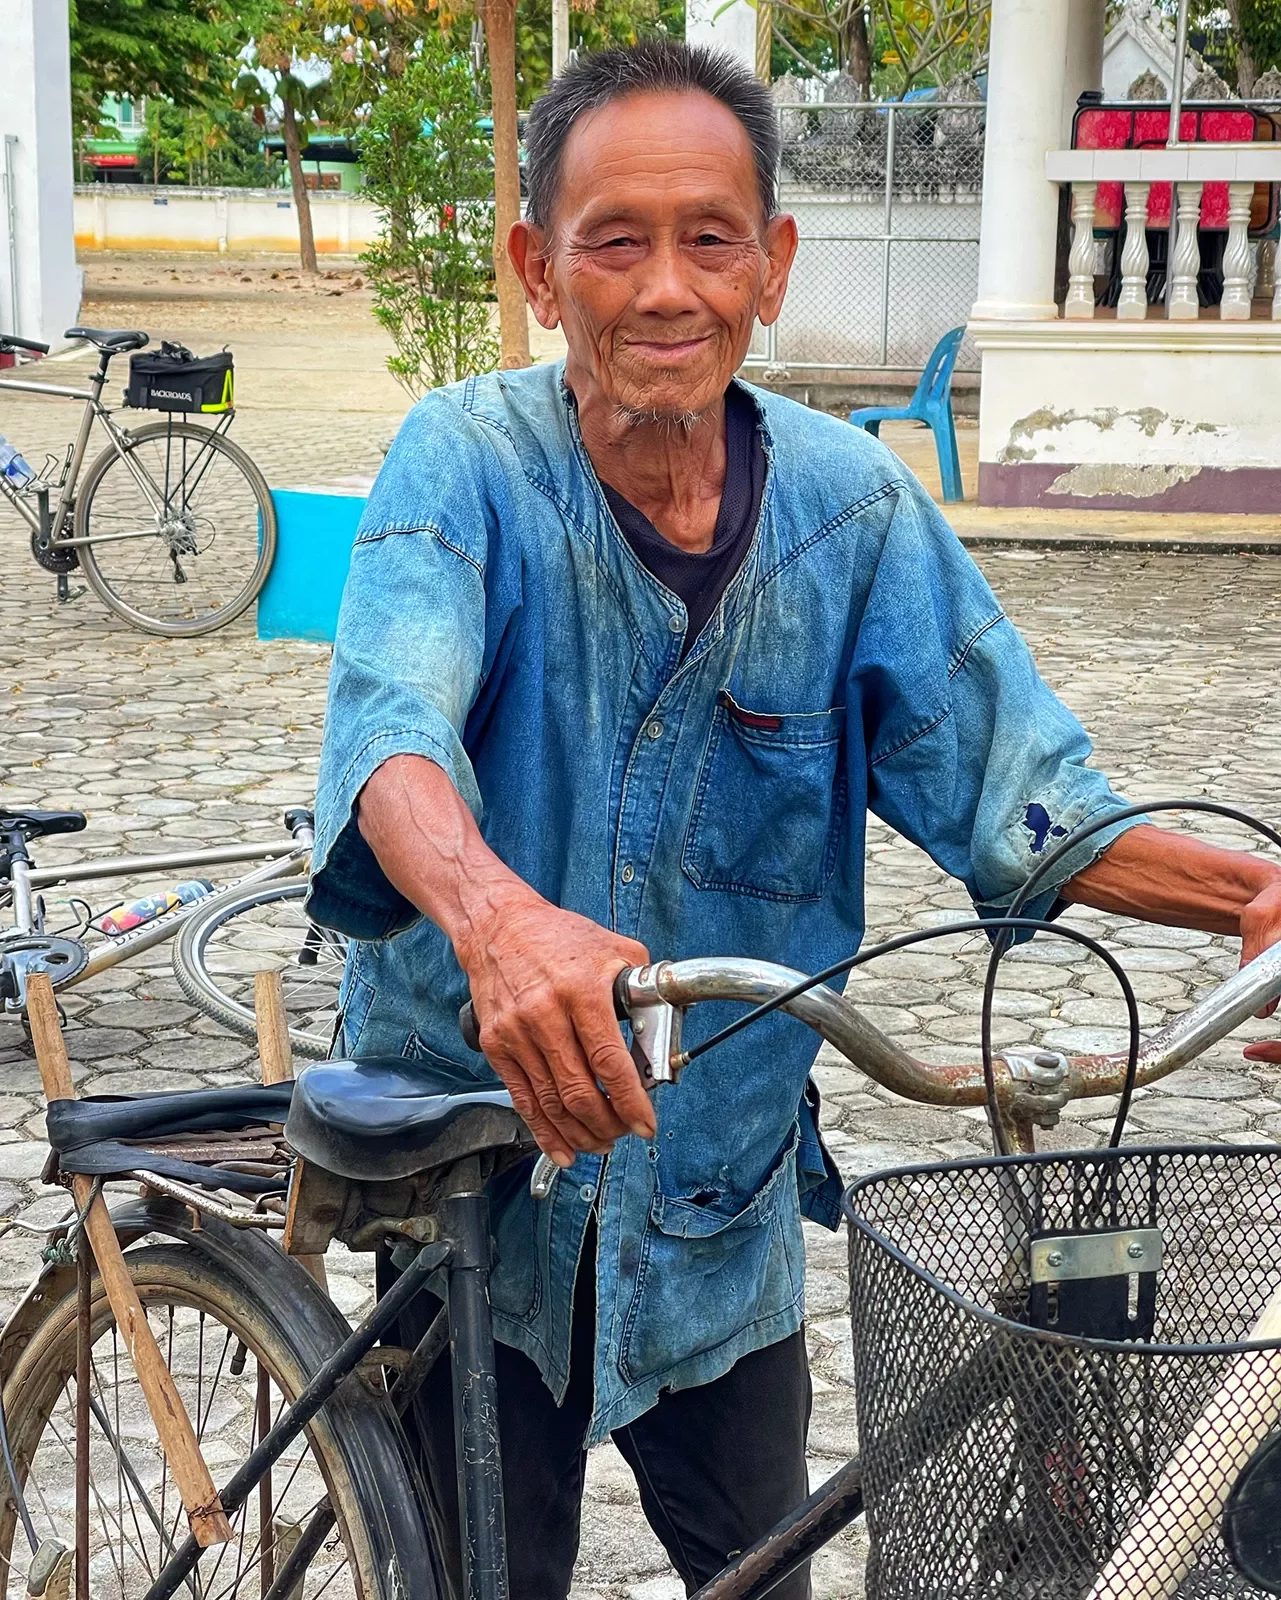 Local Thai man with a bike